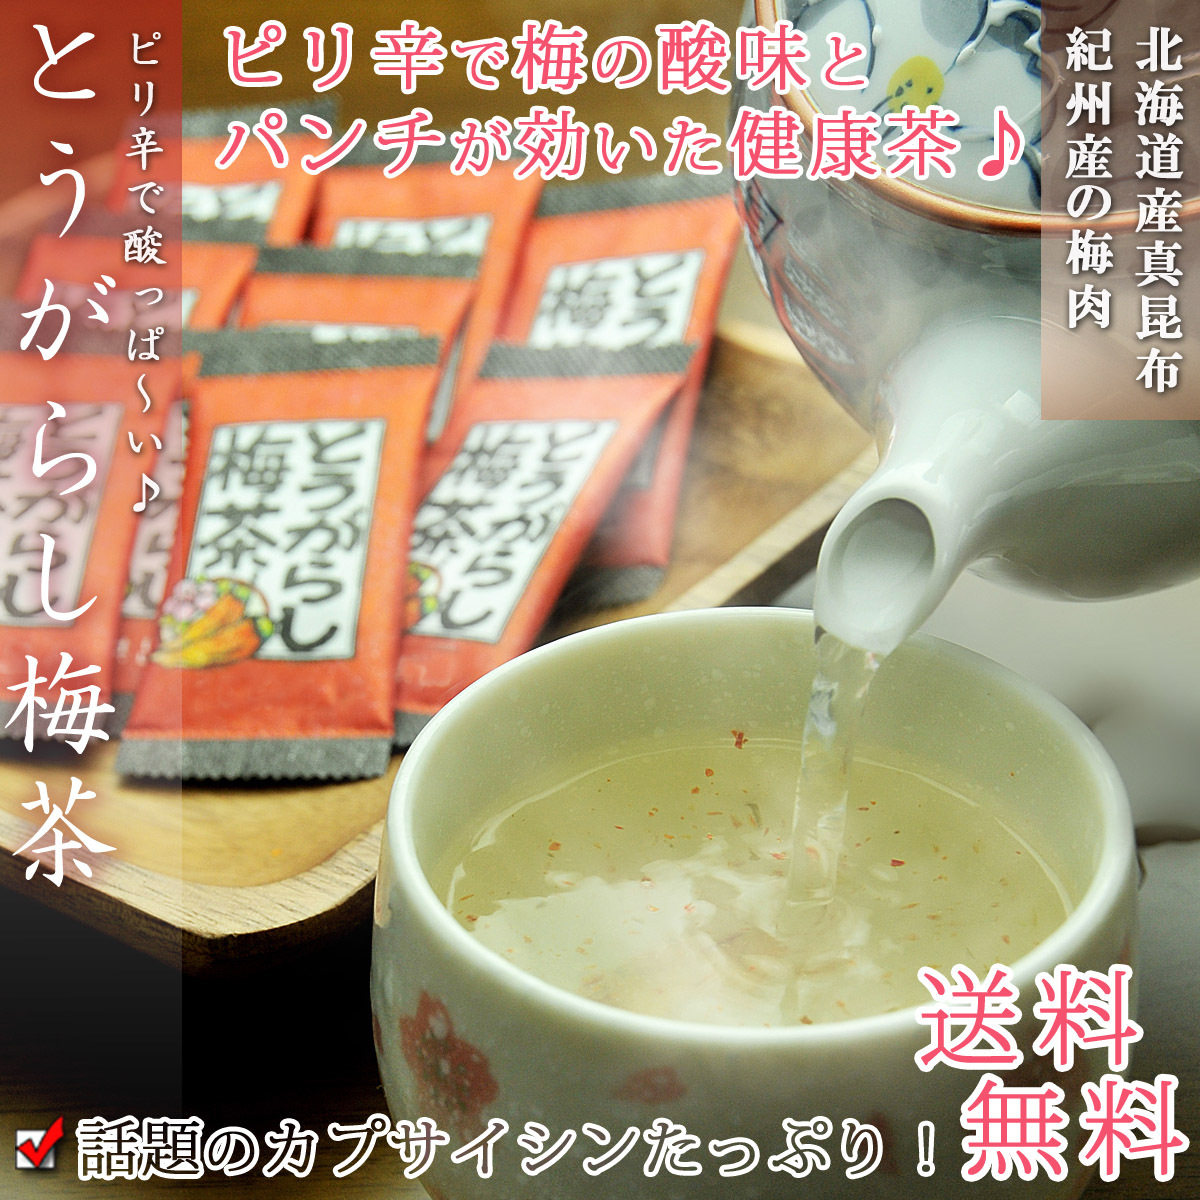 梅昆布茶 とうがらし梅茶 48P(24p×2袋)昆布茶 健康茶 こぶちゃ コンブチャ こんぶ茶 お茶 ギフト 得トク2WEEKS